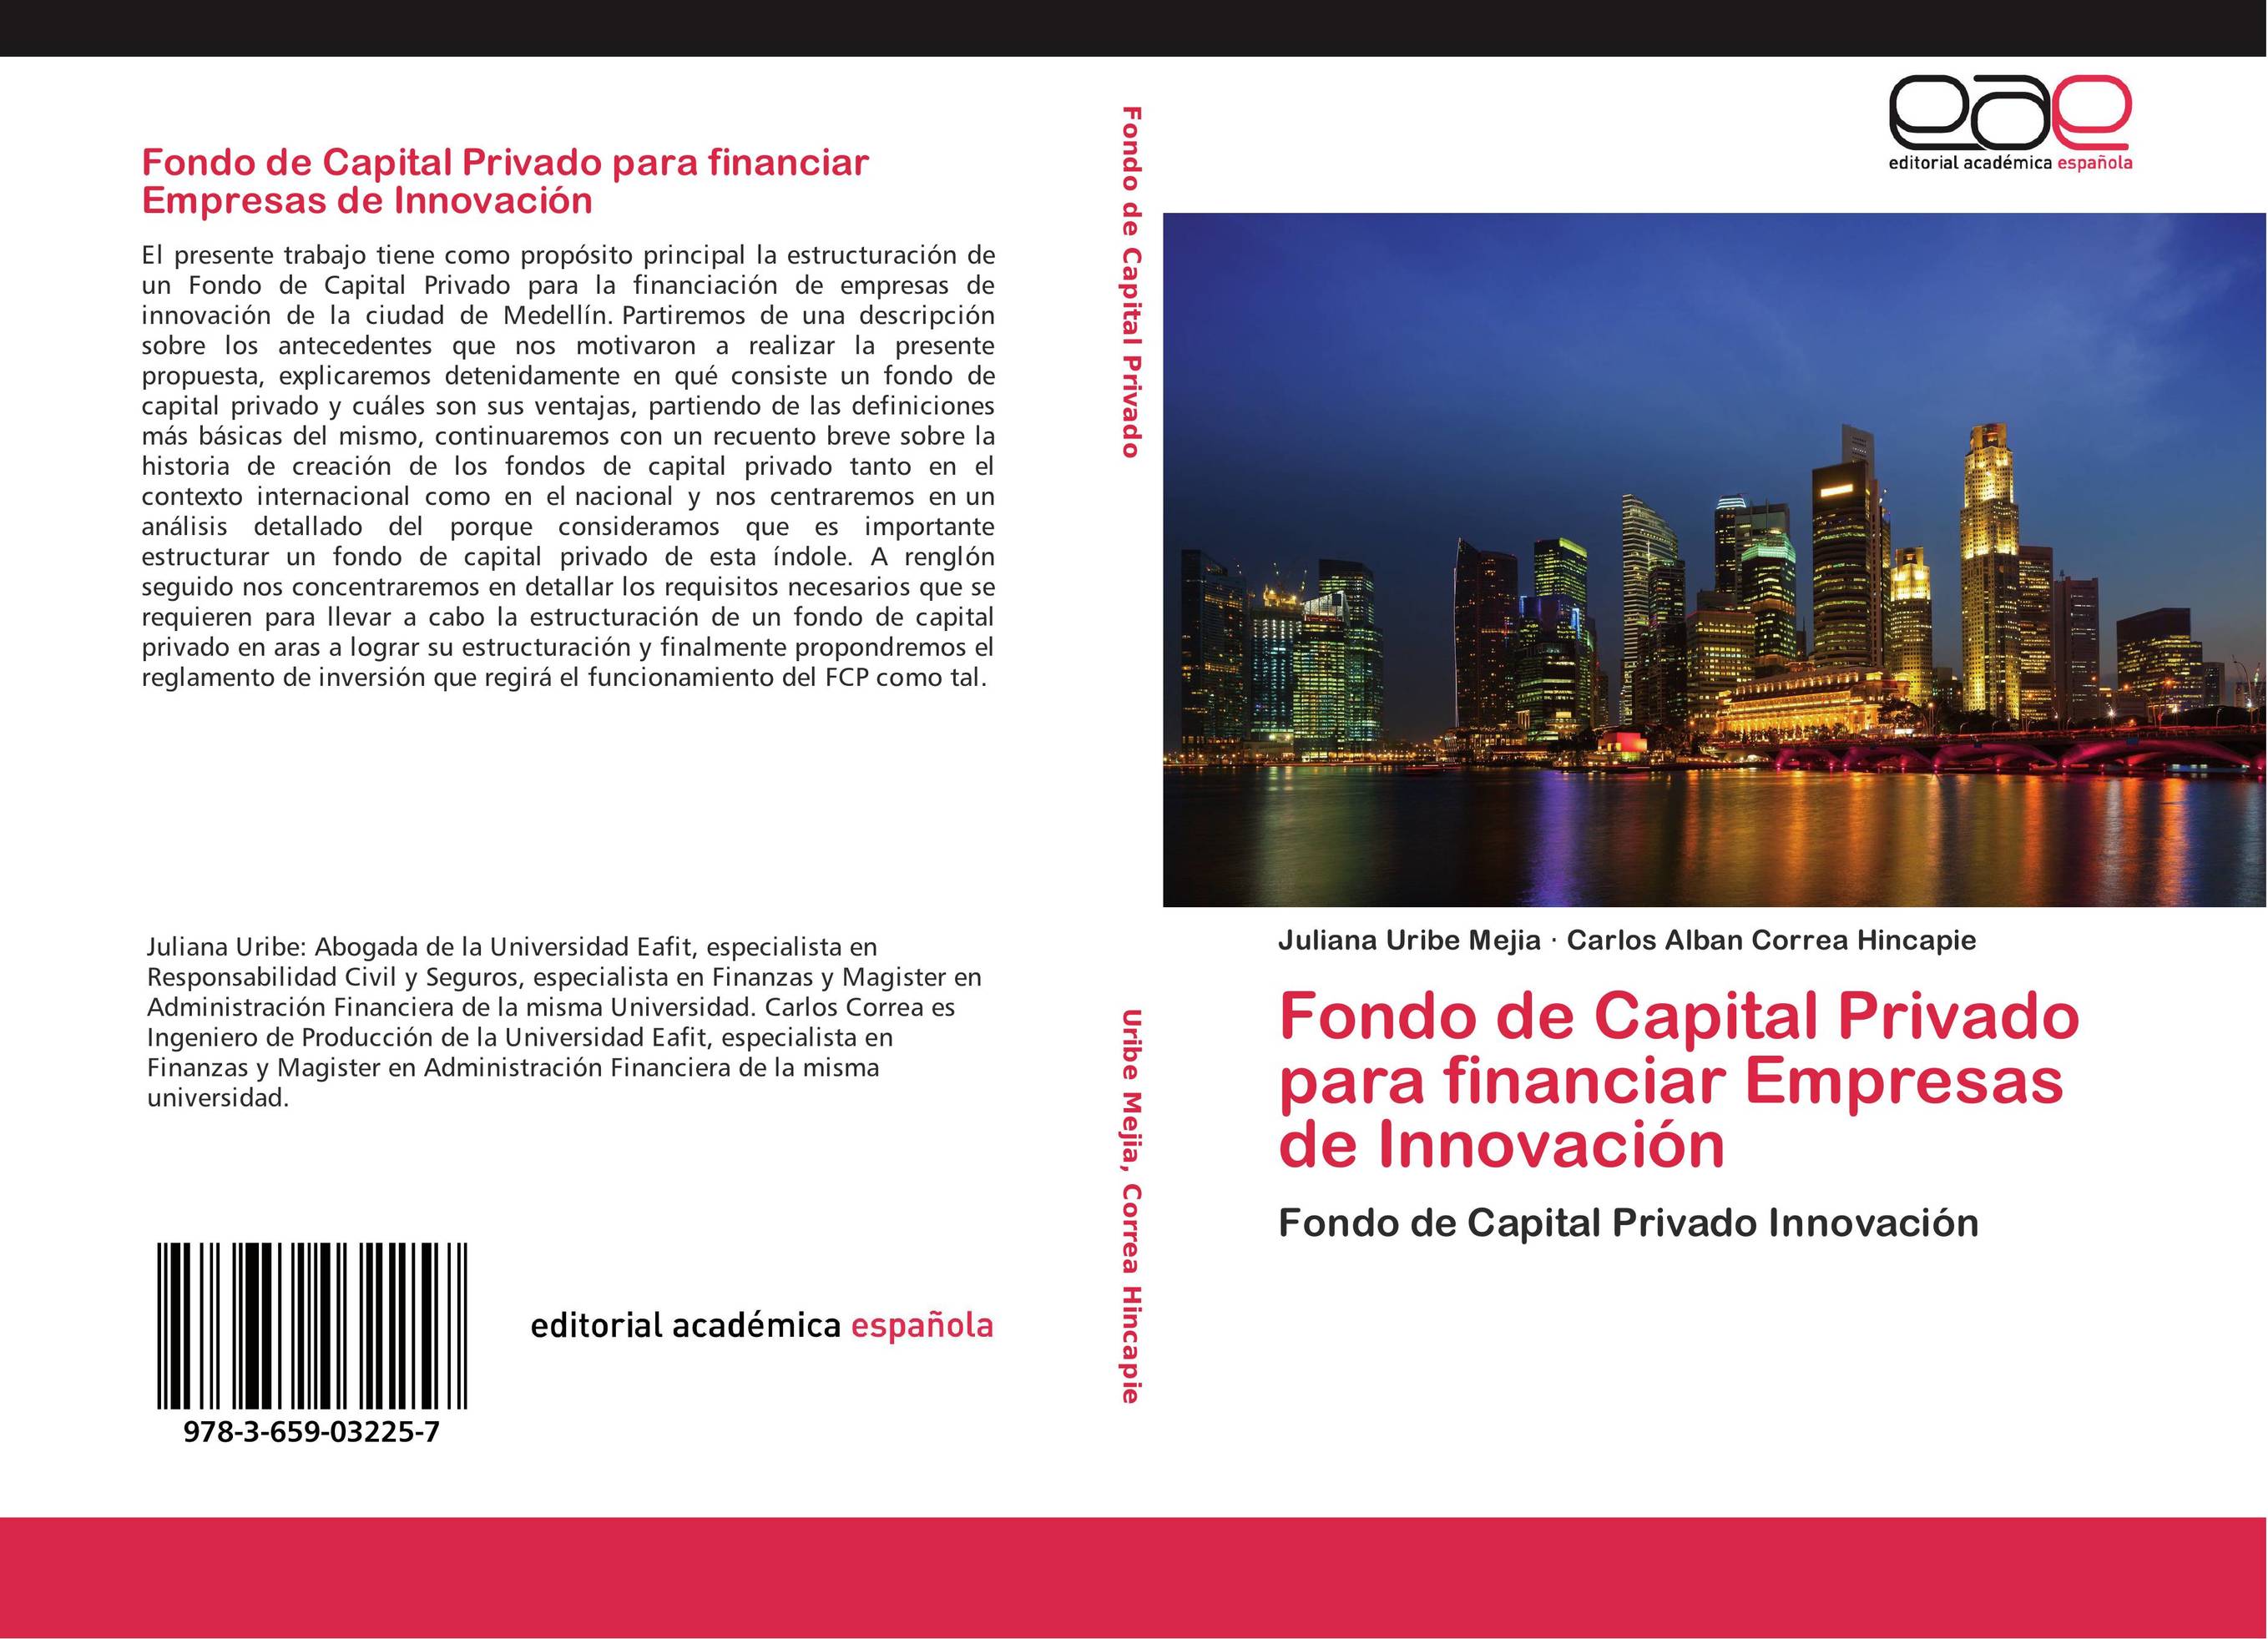 Fondo de Capital Privado para financiar Empresas de Innovación